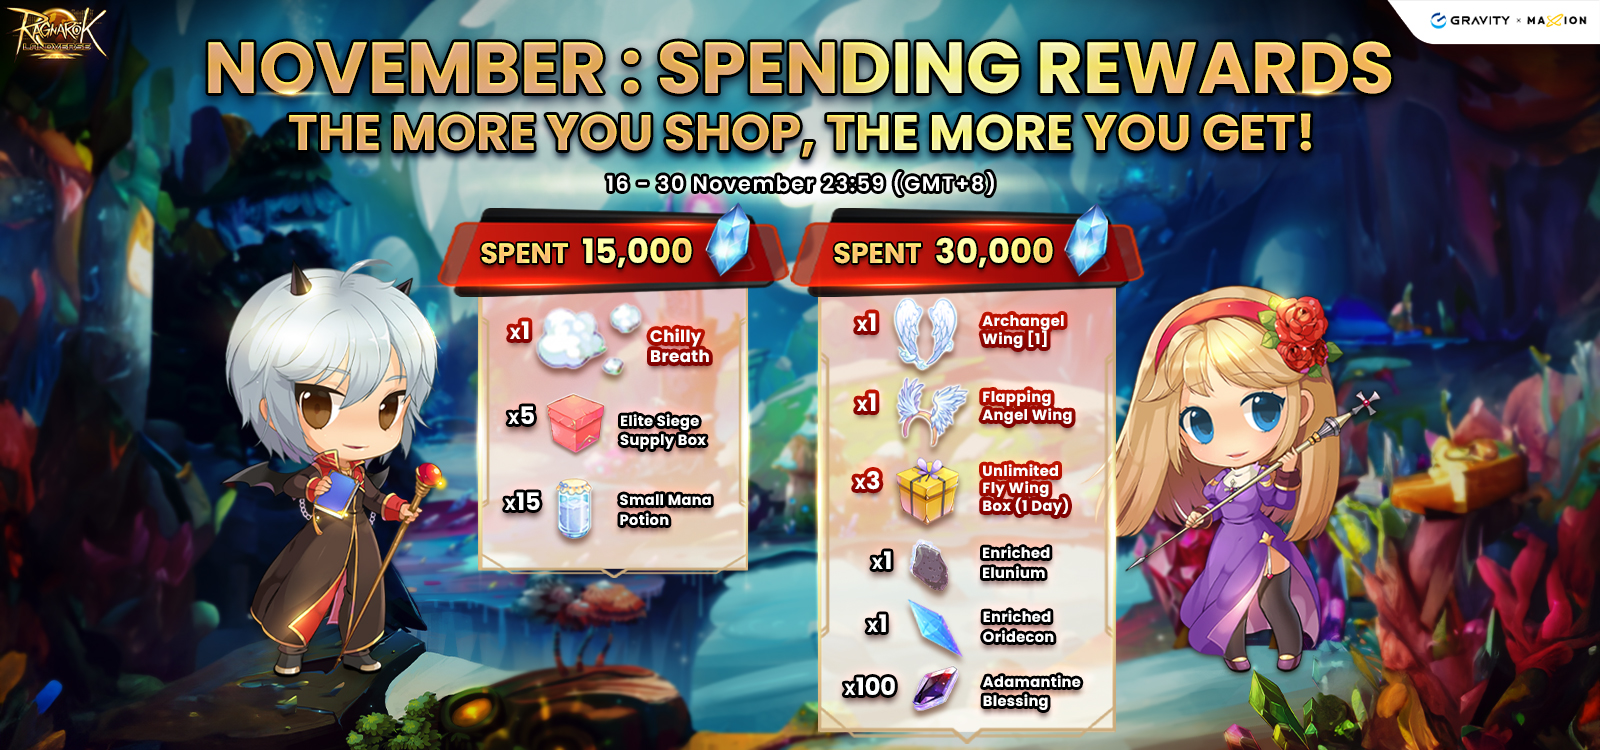 Spending Rewards Event